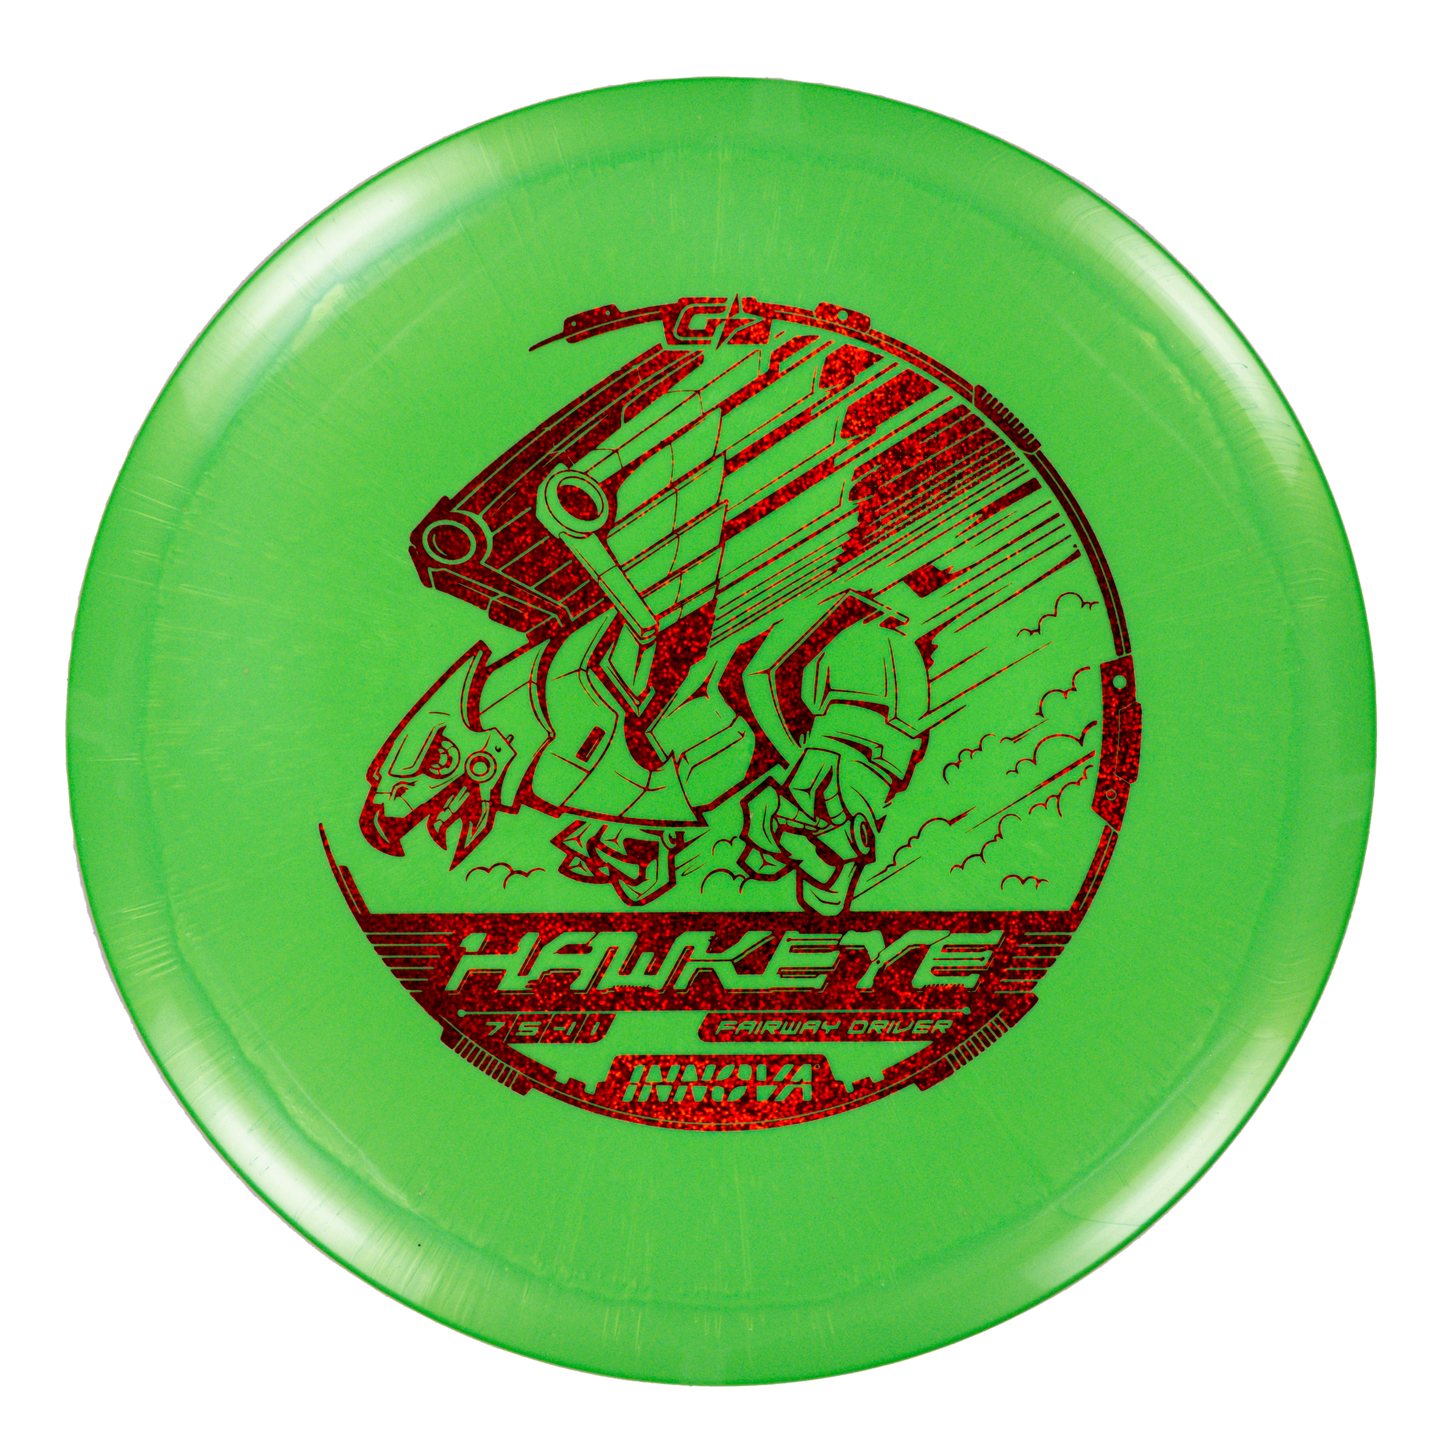 Innova GStar Hawkeye Golf Disc